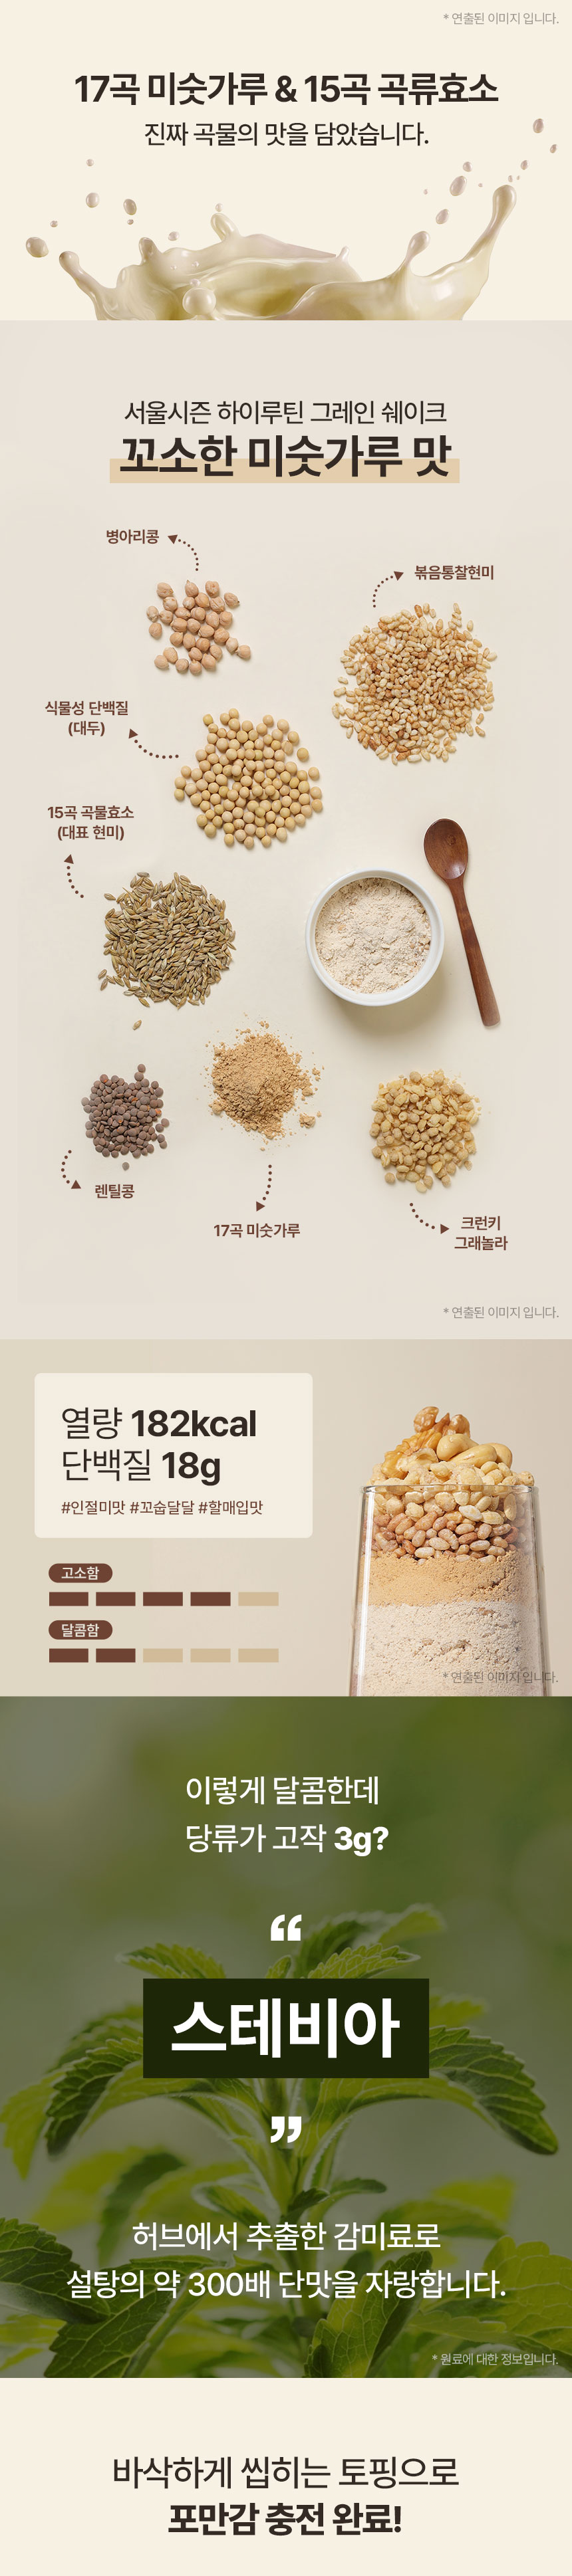 seoul_season_grain_shake_23_1_11.jpg